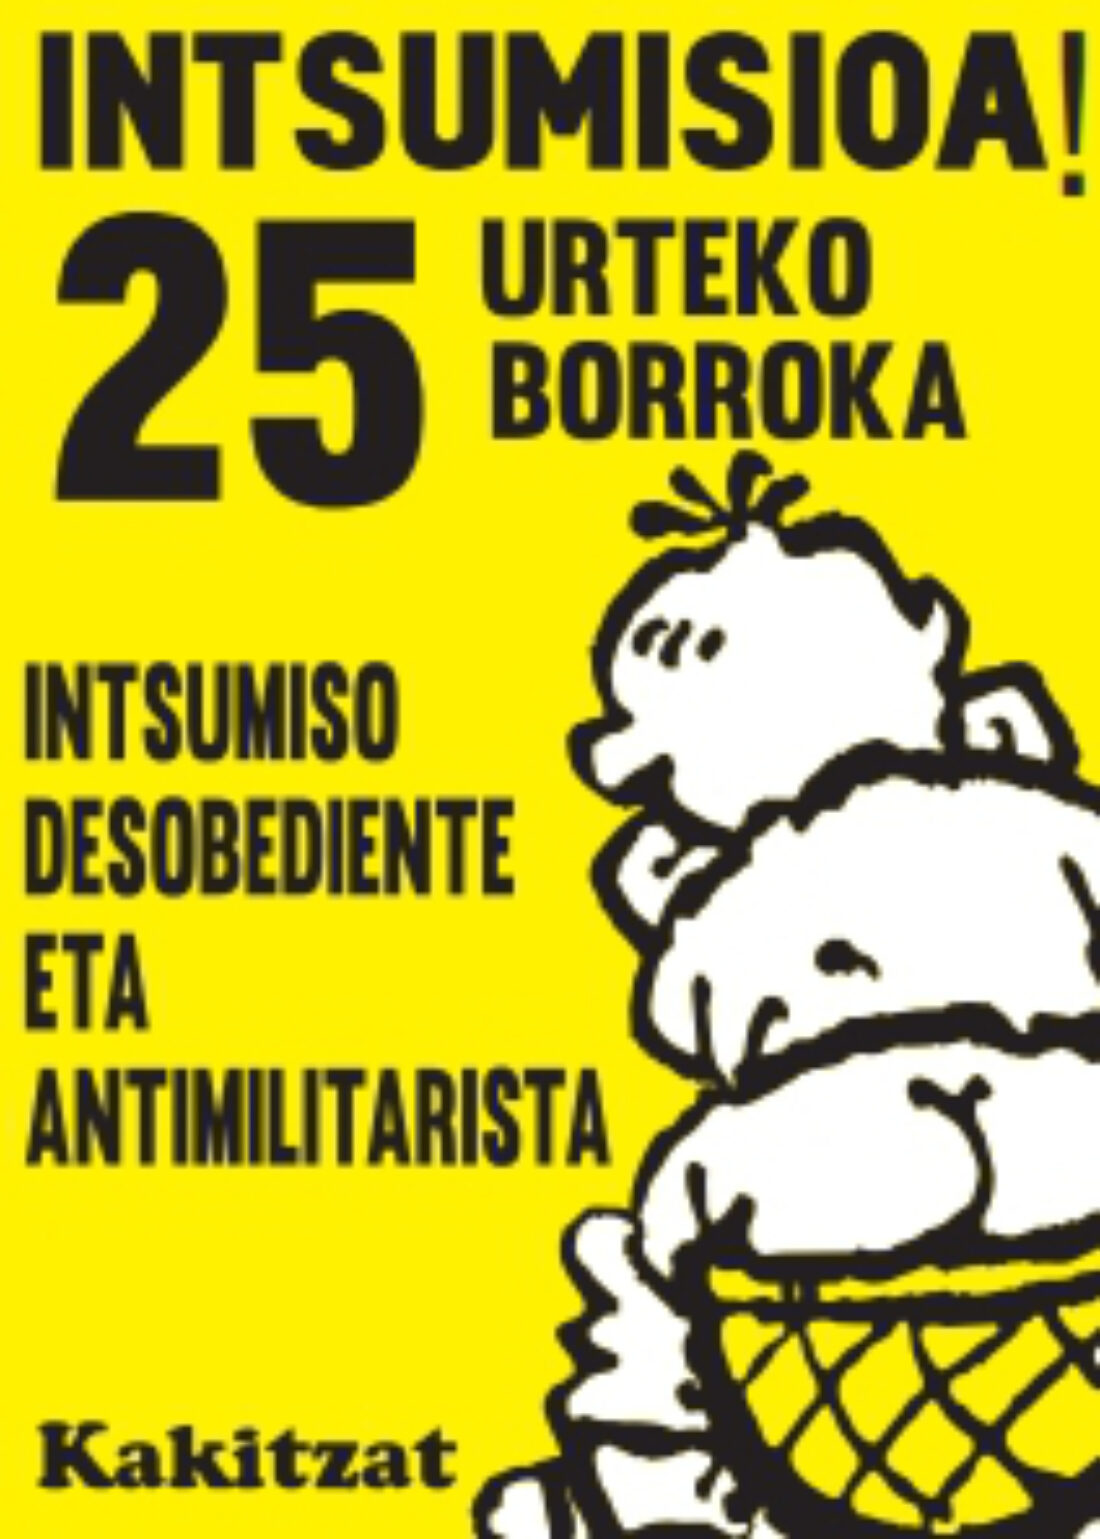 Bilbao. Actos por los 25 años de insumisión